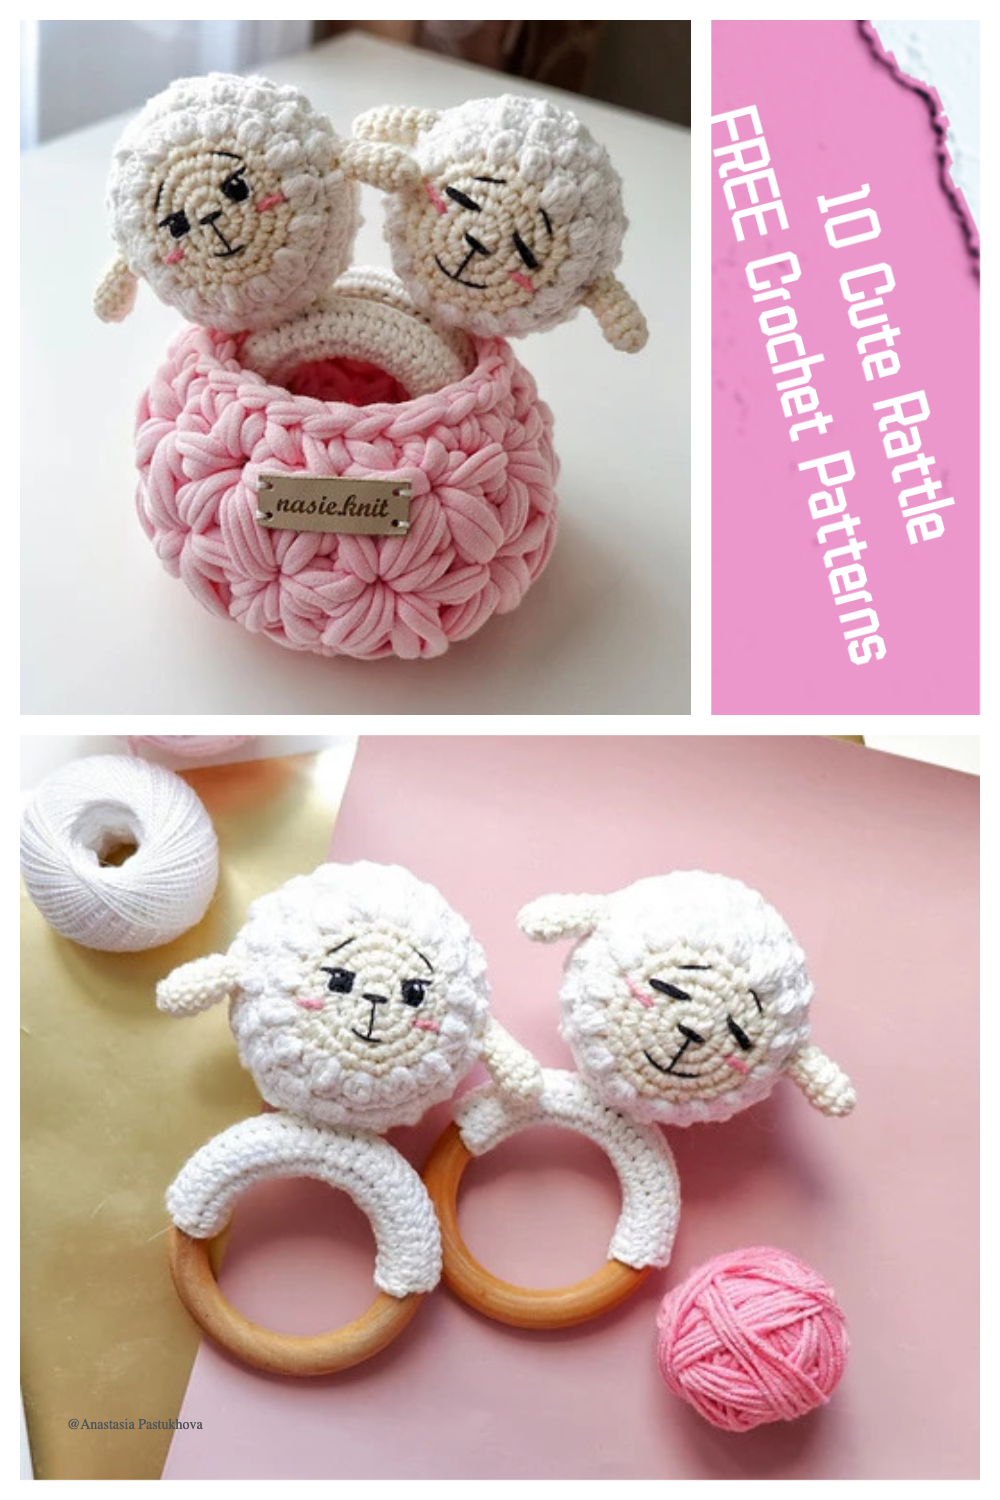 10 Cute Rattle FREE Crochet Patterns